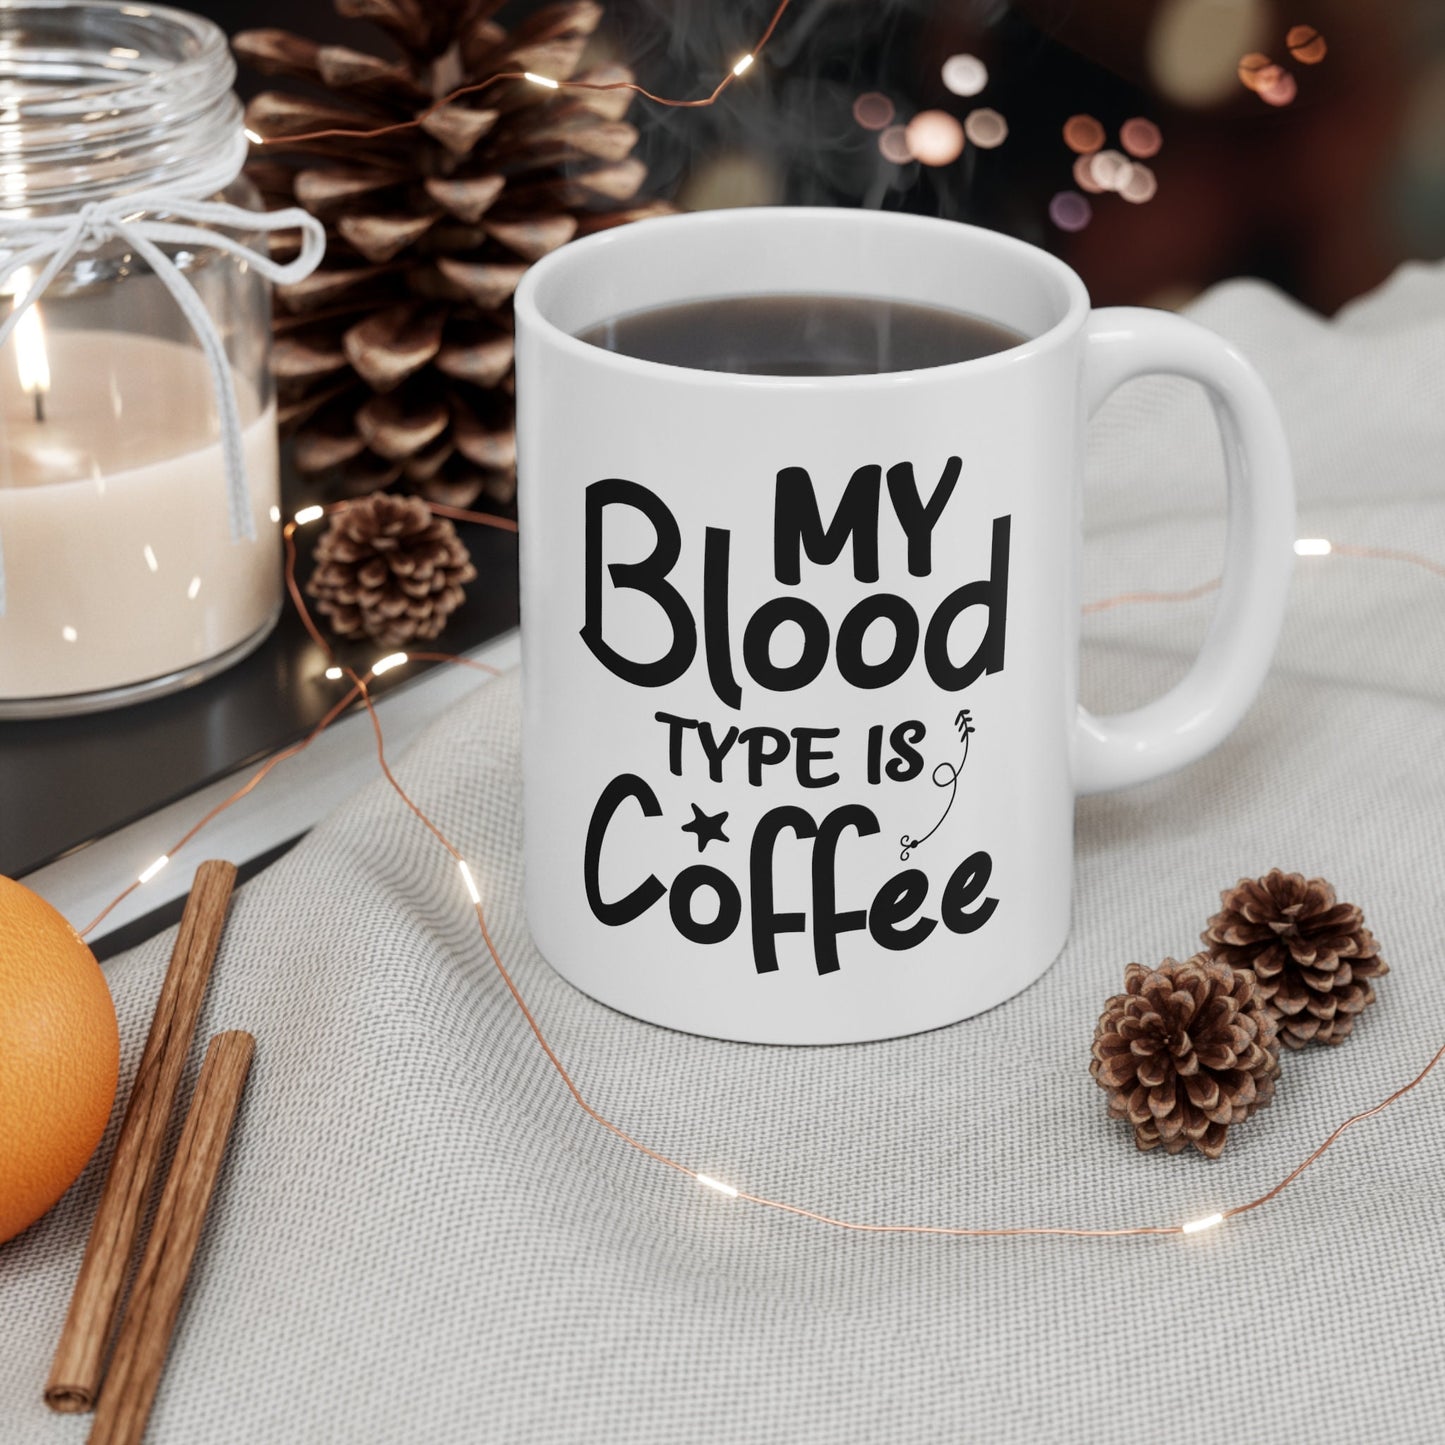 Blood Type is Coffee Nursing Mug, I love nurses Mug, Awesome gift Mug for nurses, gift Mug for a special nurse, Thank you gift Mug for nurse